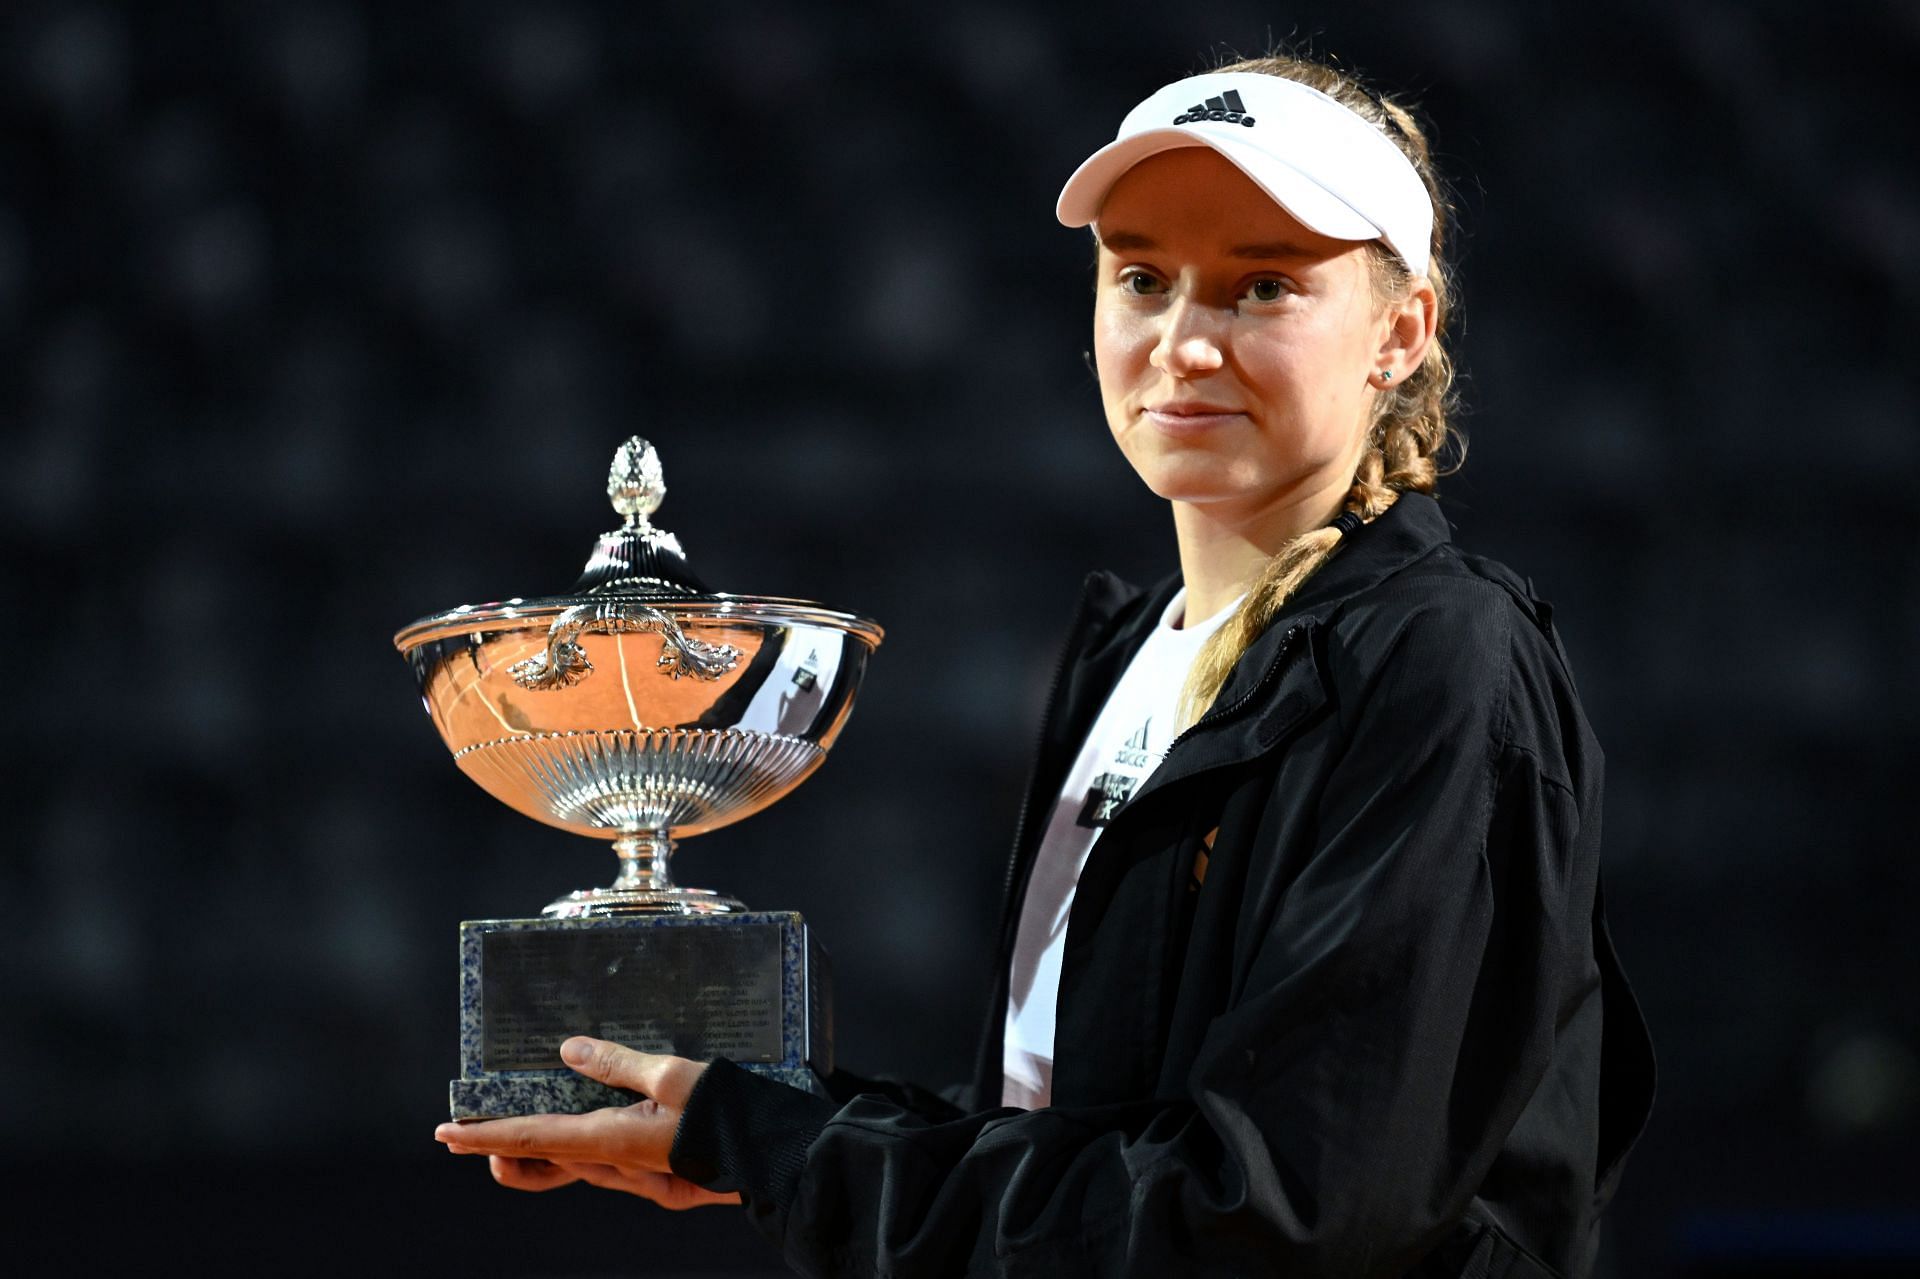 Elena Rybakina won the Italian Open ahead of the 2023 French Open